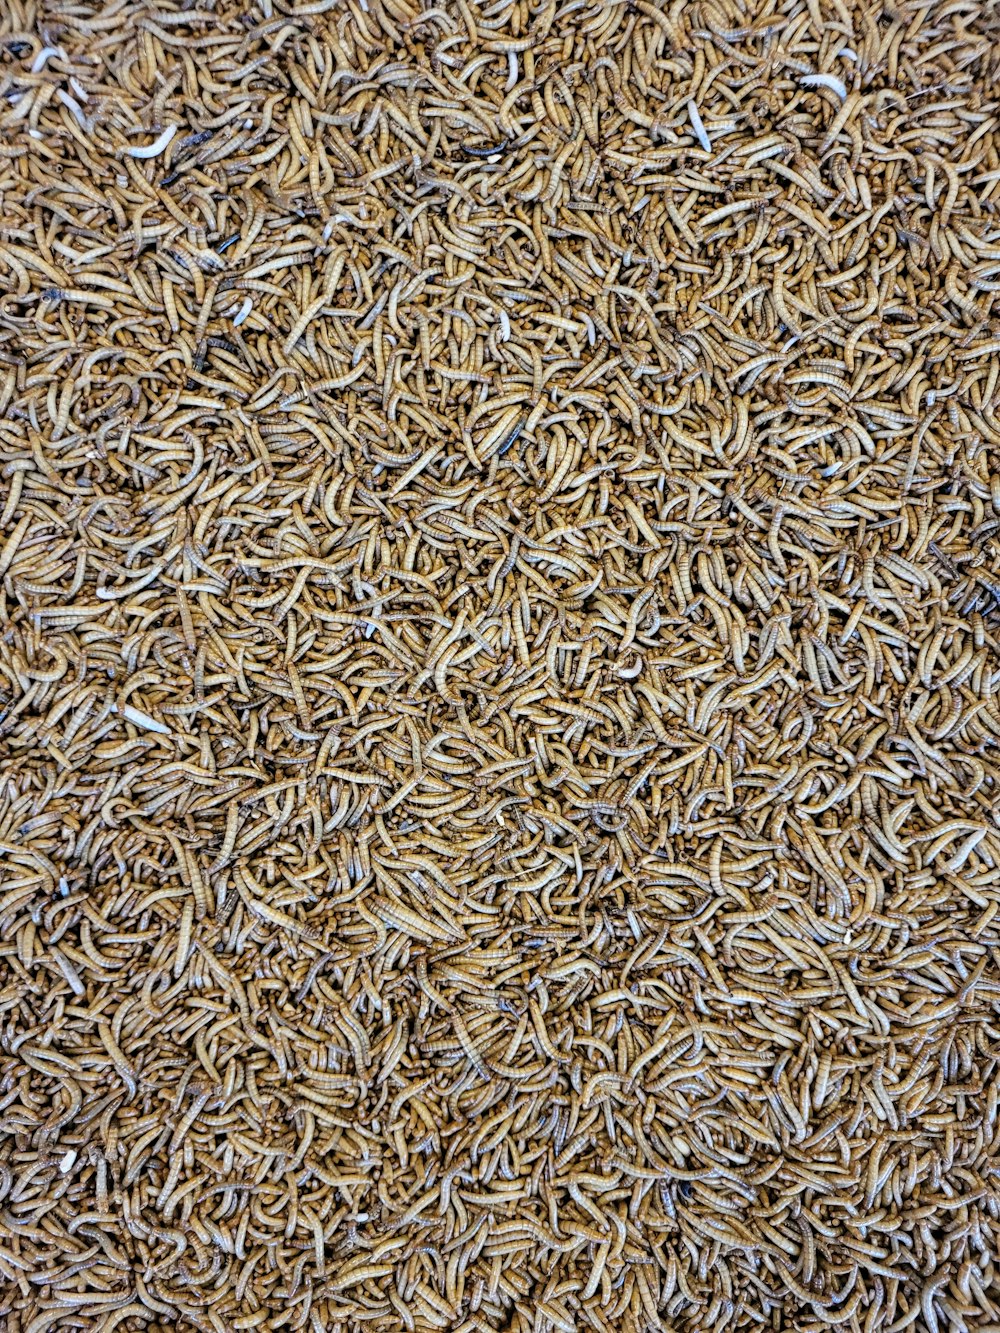 um close up de uma pilha de arroz integral